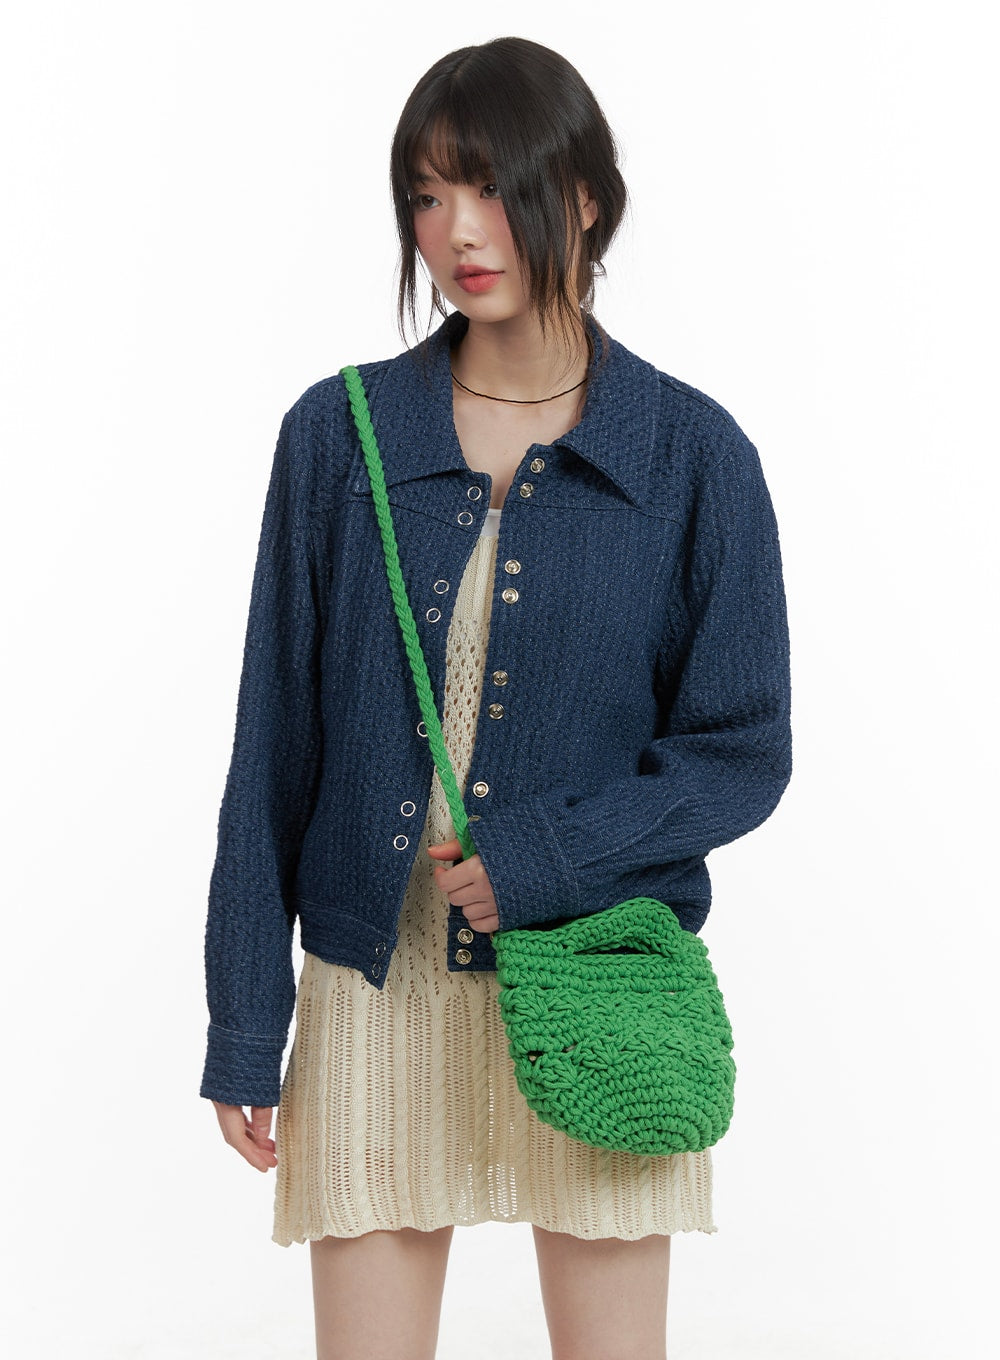 straw-crochet-crossbody-bag-ca411